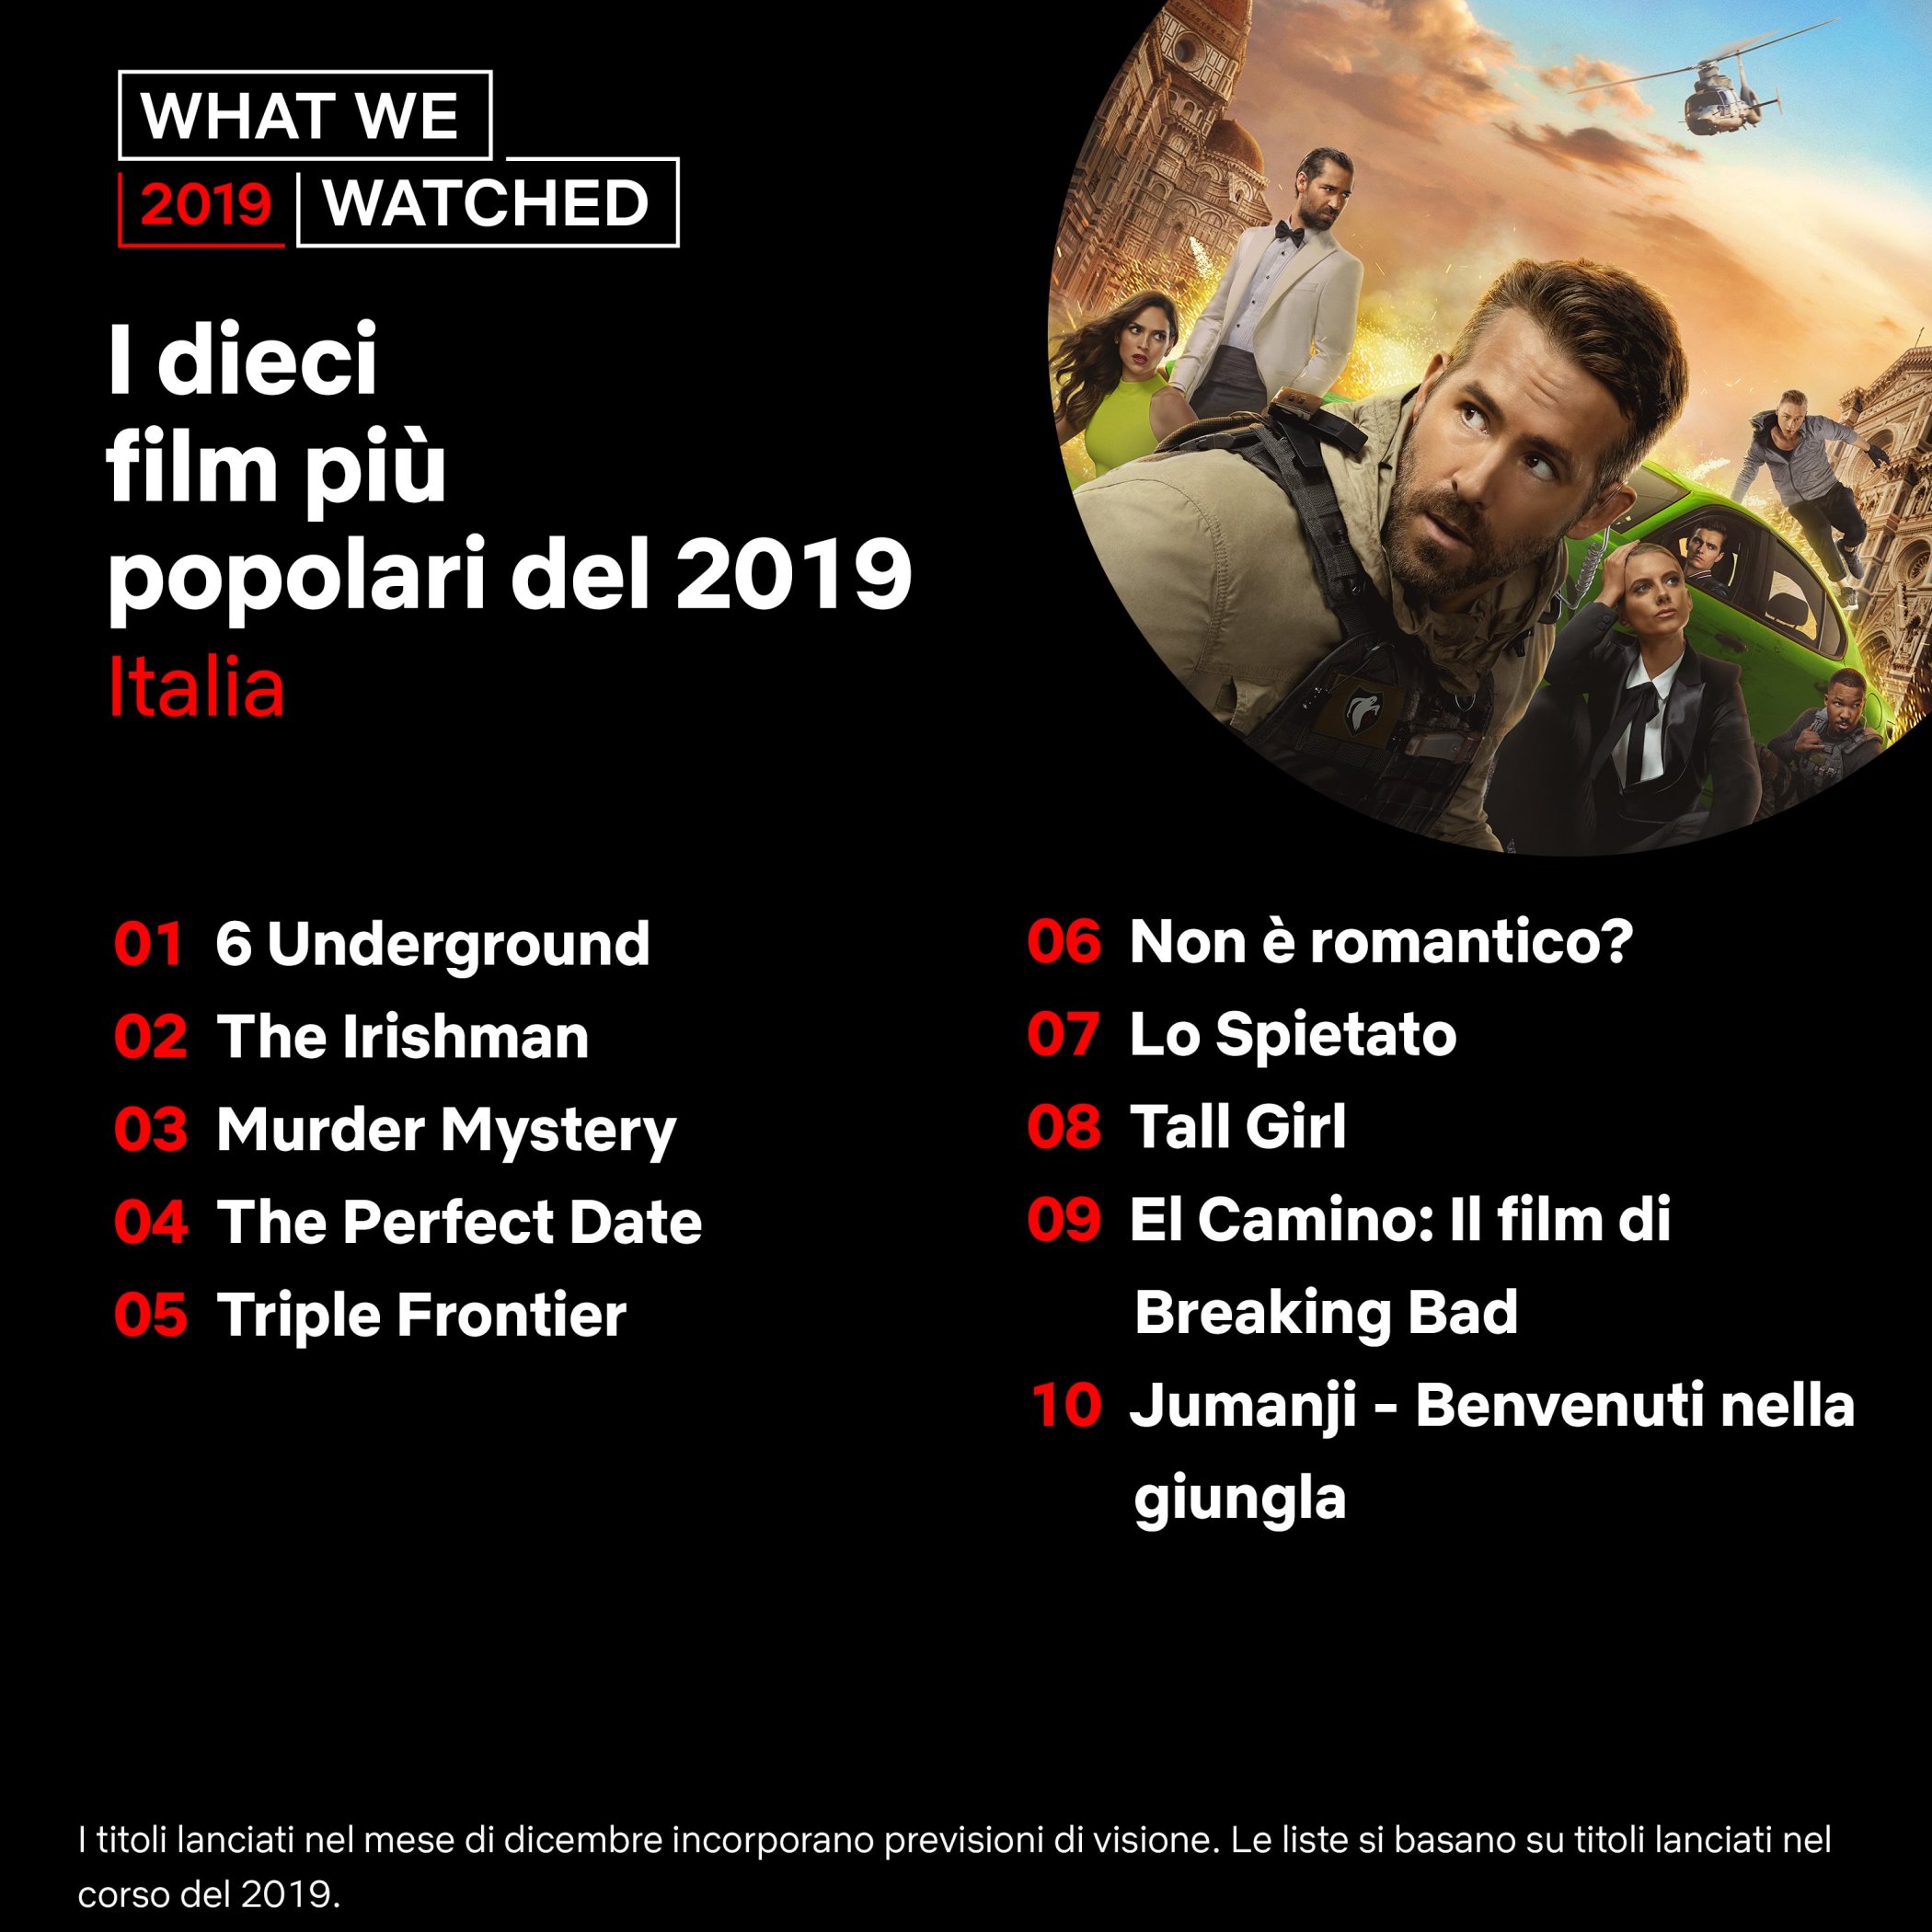 I dieci film più popolari del 2019 su Netflix in Italia